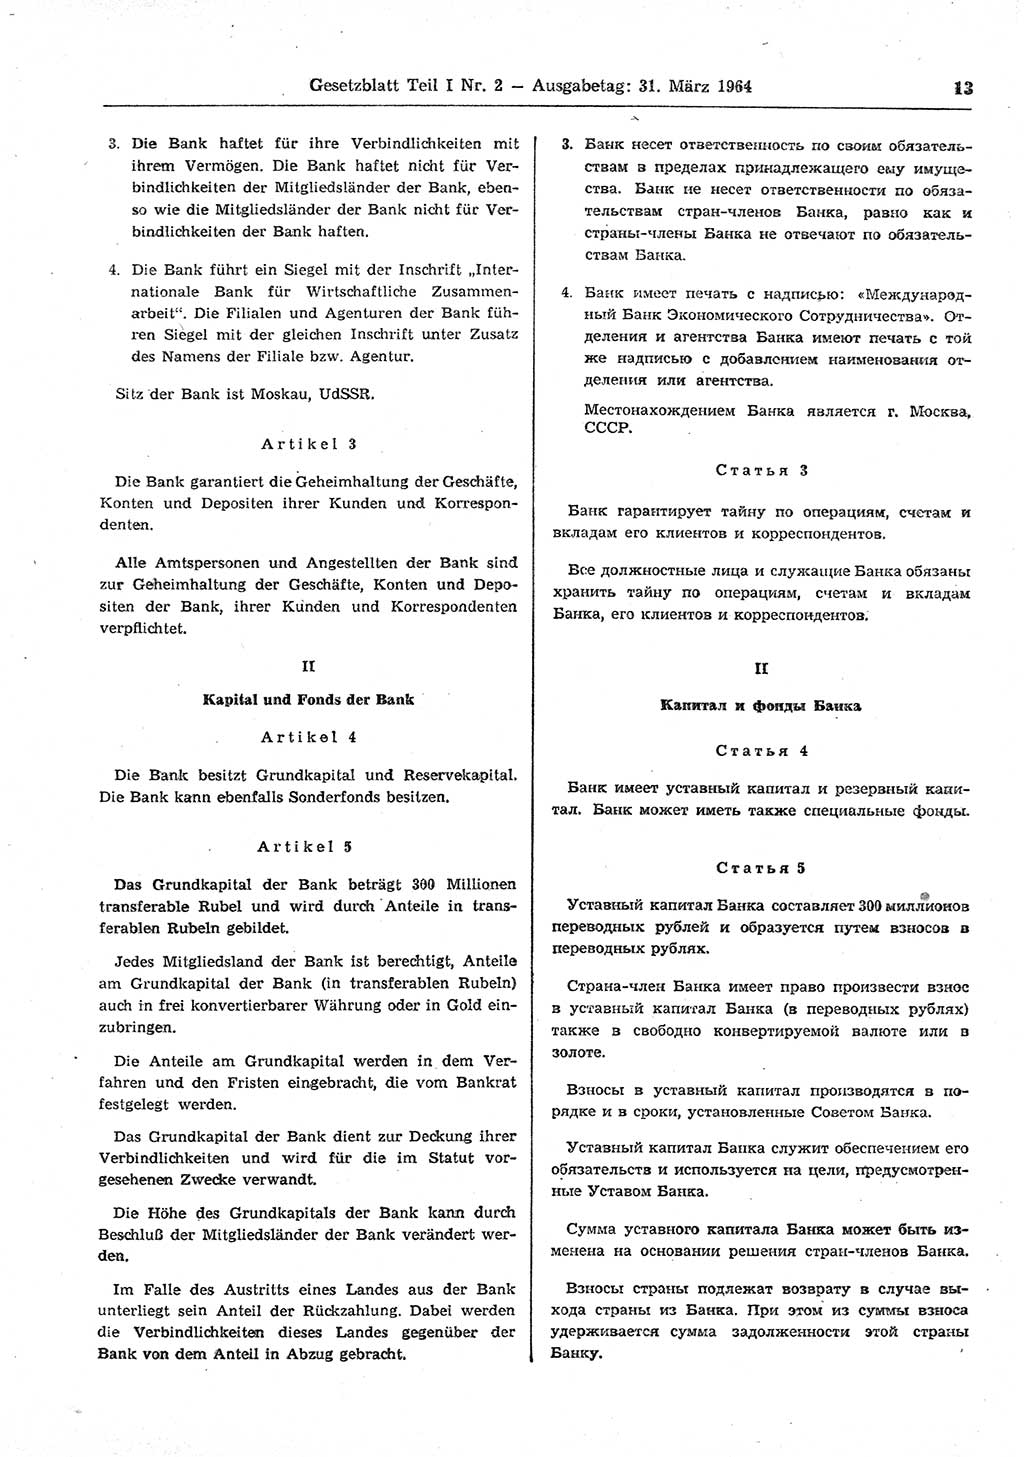 Gesetzblatt (GBl.) der Deutschen Demokratischen Republik (DDR) Teil Ⅰ 1964, Seite 13 (GBl. DDR Ⅰ 1964, S. 13)